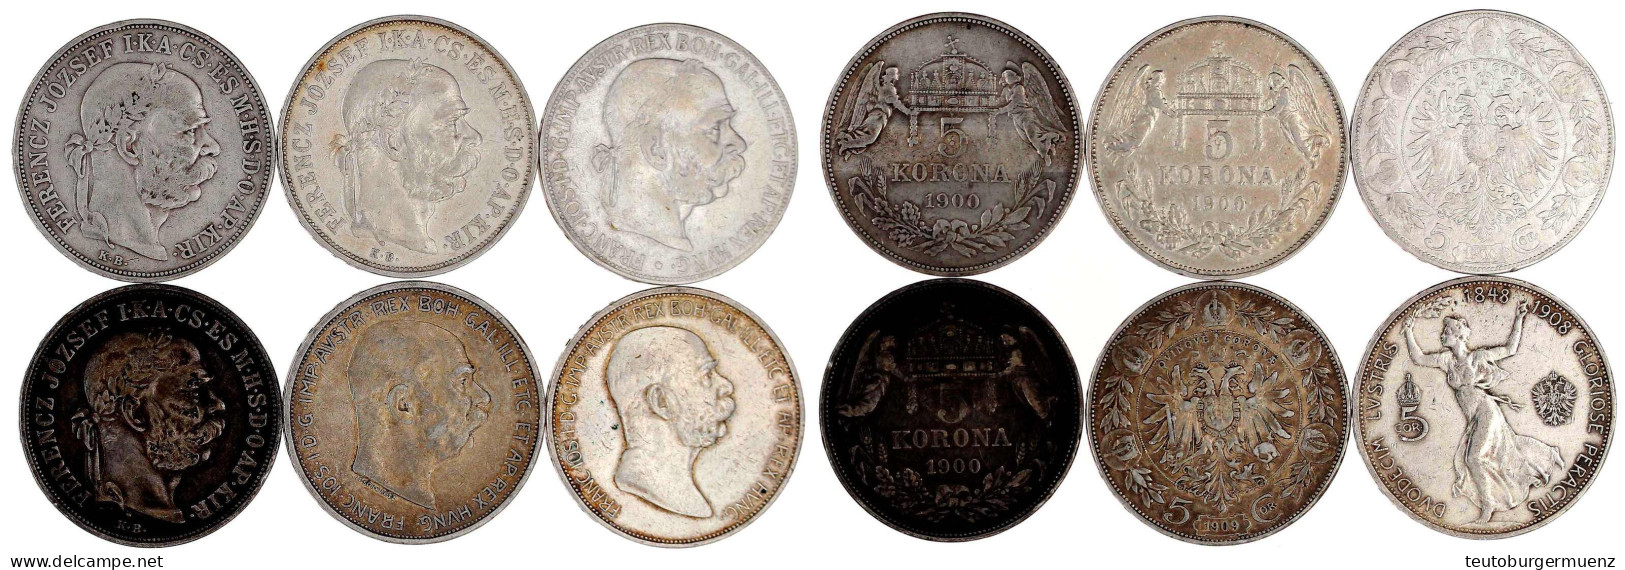 6 X 5 Kronen Aus 1900 Bis 1909, Dabei Auch Regierungsjub. 1908. Meist Sehr Schön - Gouden Munten